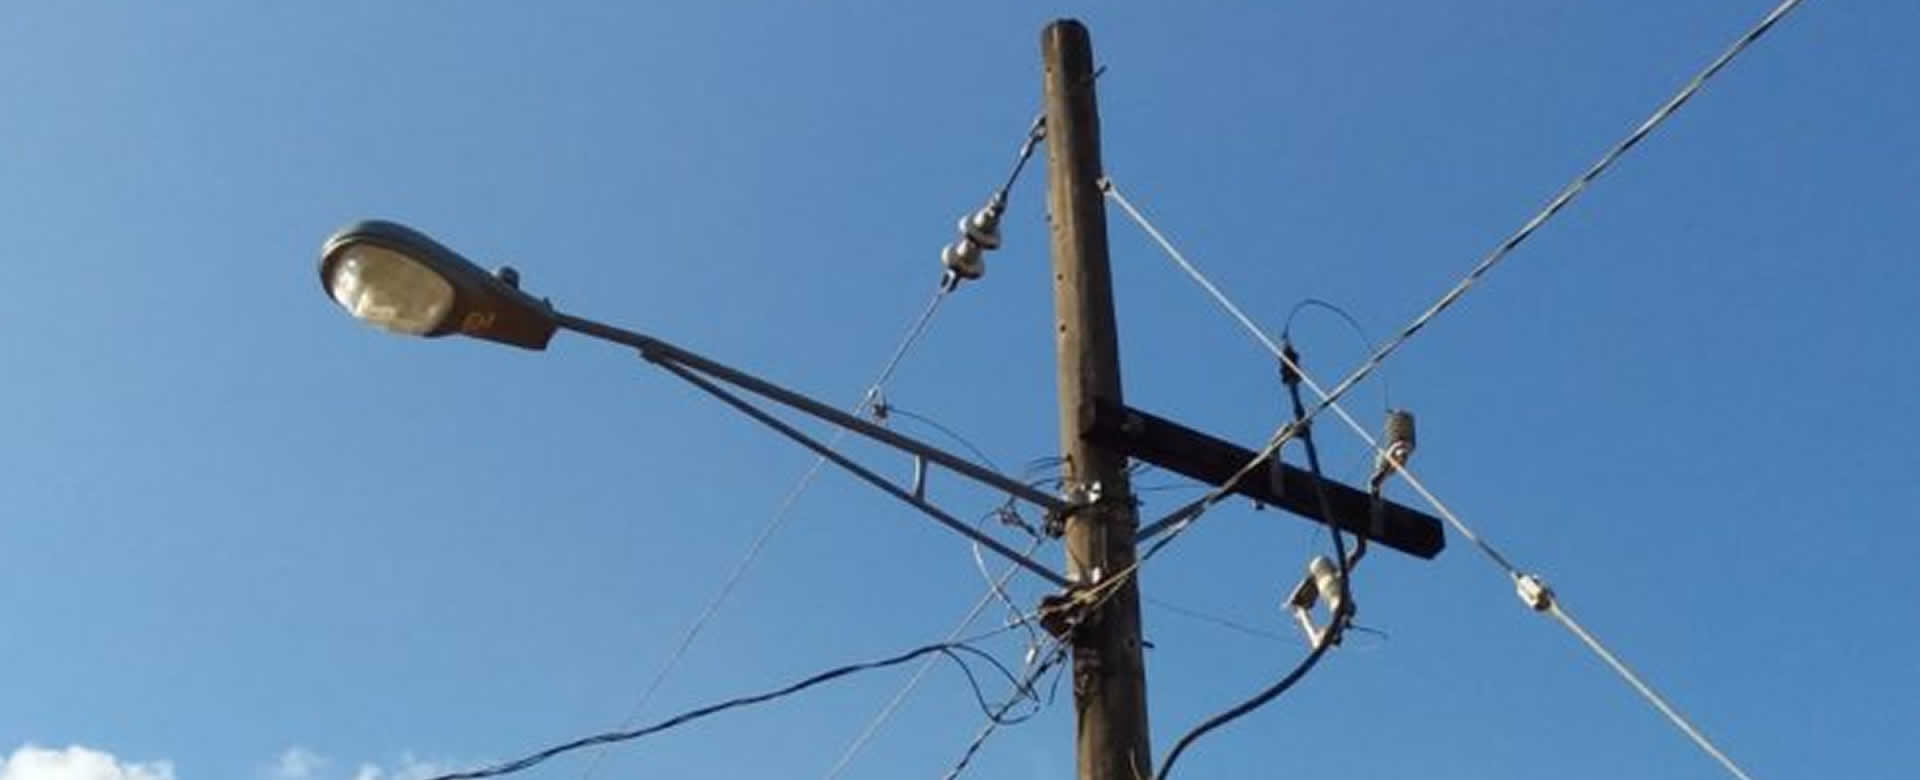 Un nuevo proyecto de electrificación fue inaugurado en Masatepe